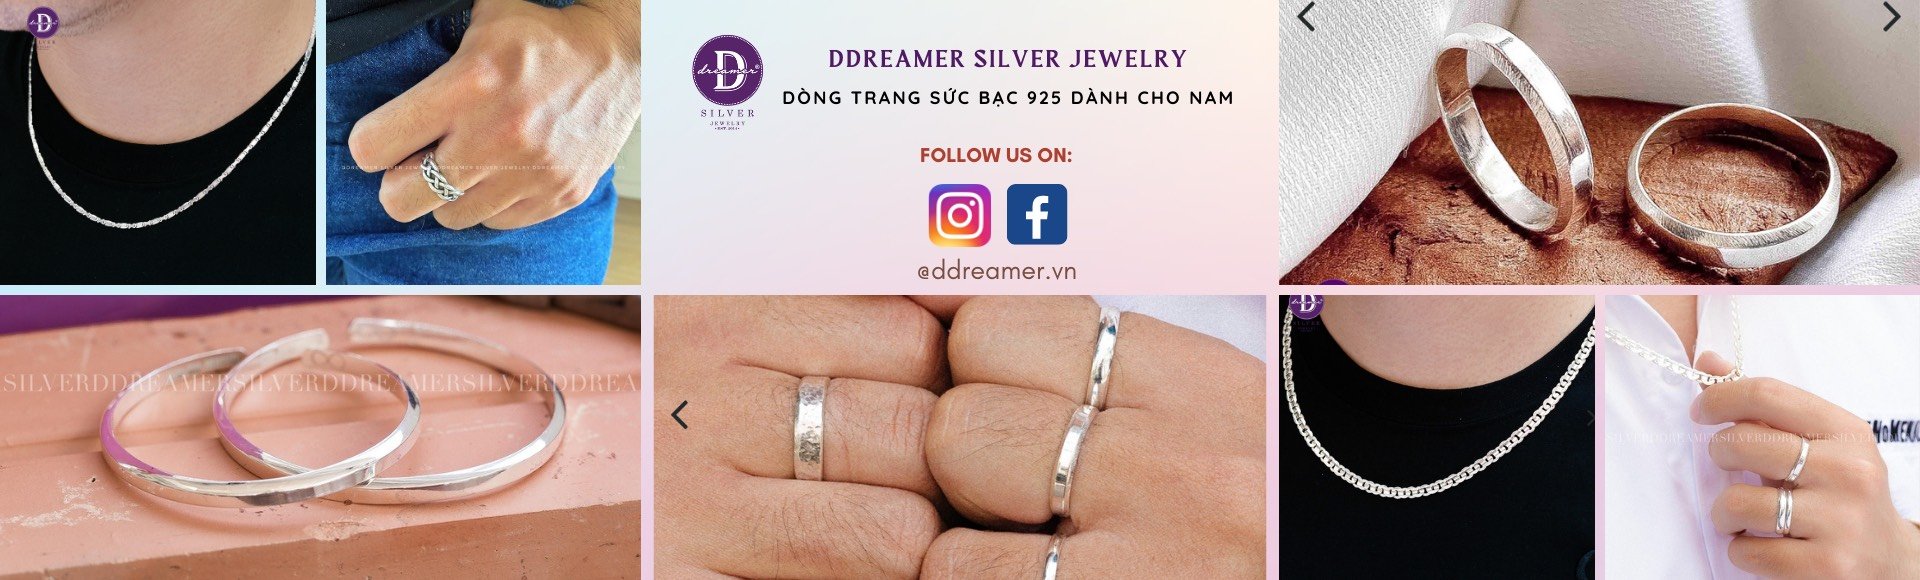 Dây Chuyền Bạc 925 Dành Cho Nam - Silver Necklaces For Men